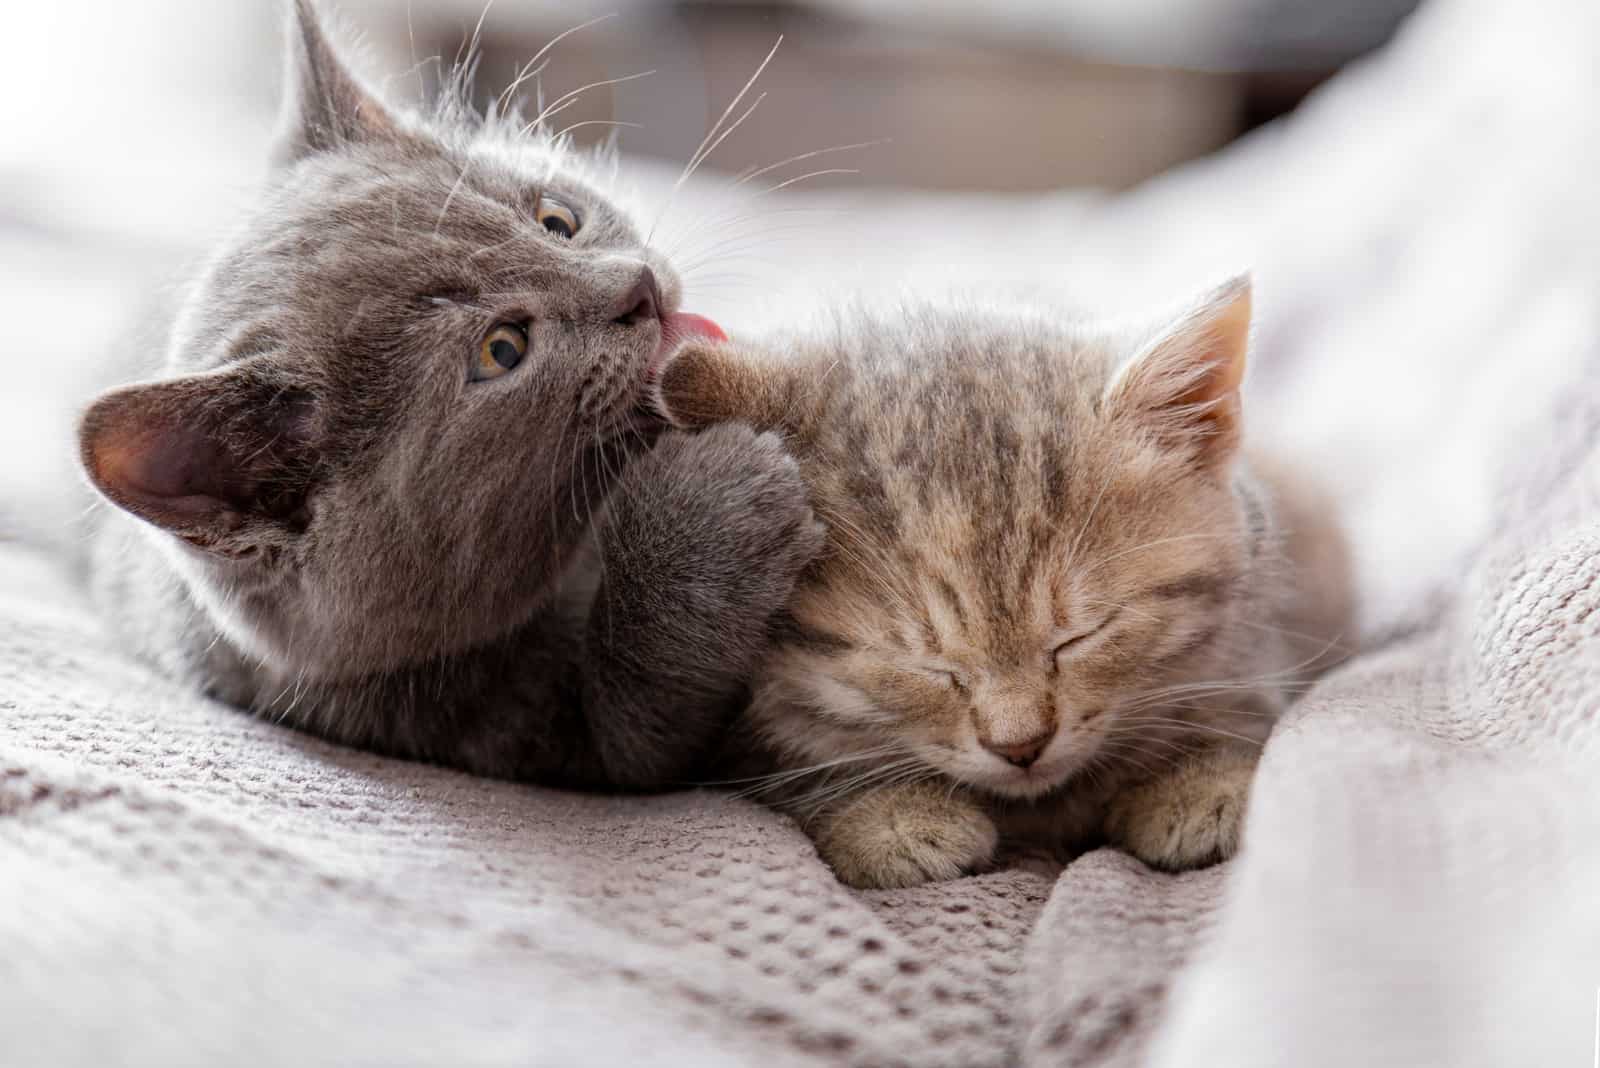 Small gray kitten licks ear of tabby kitten